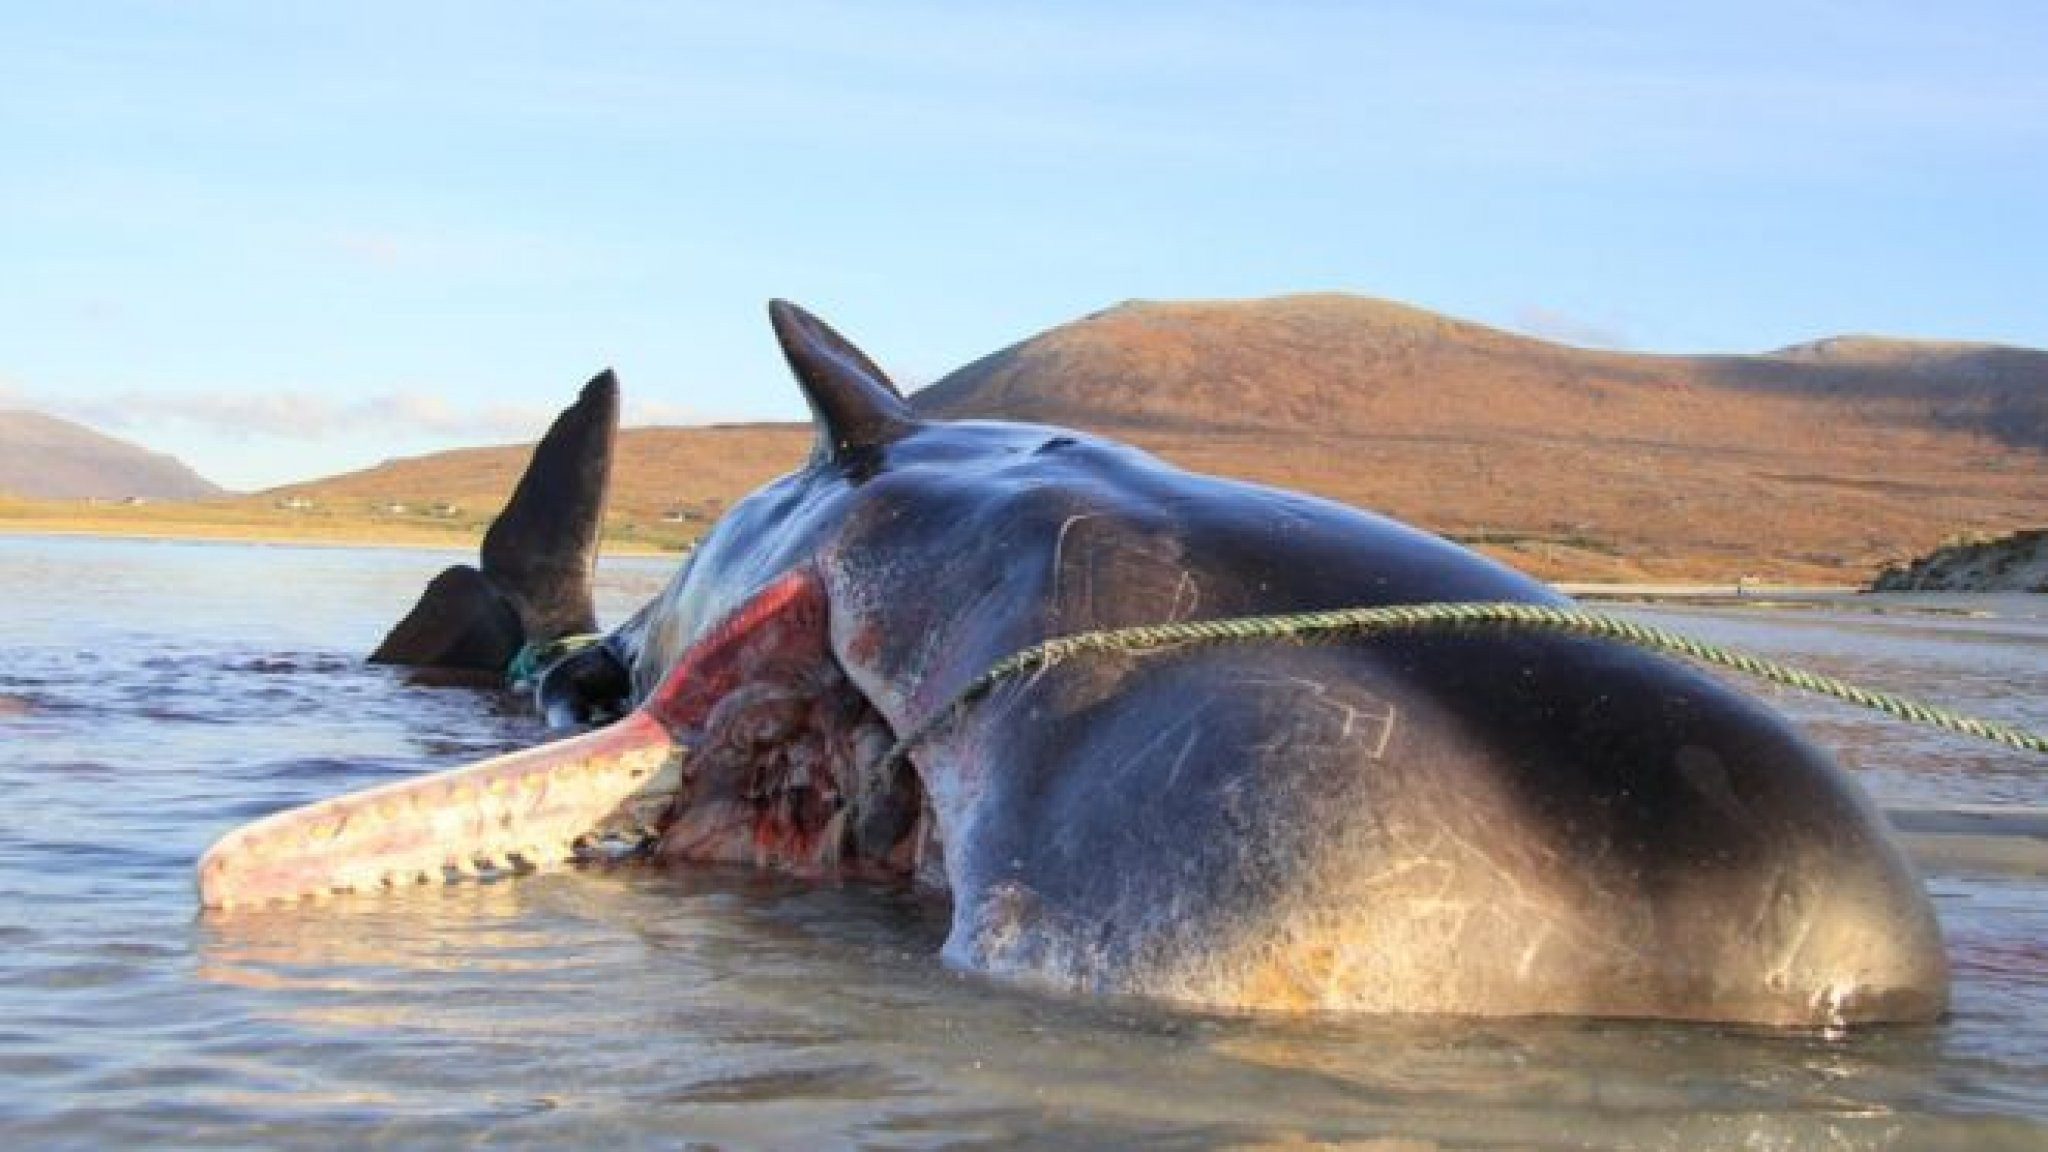 Νεκρή φάλαινα με 100 κιλά σκουπίδια στο στομάχι [ΦΩΤΟ]